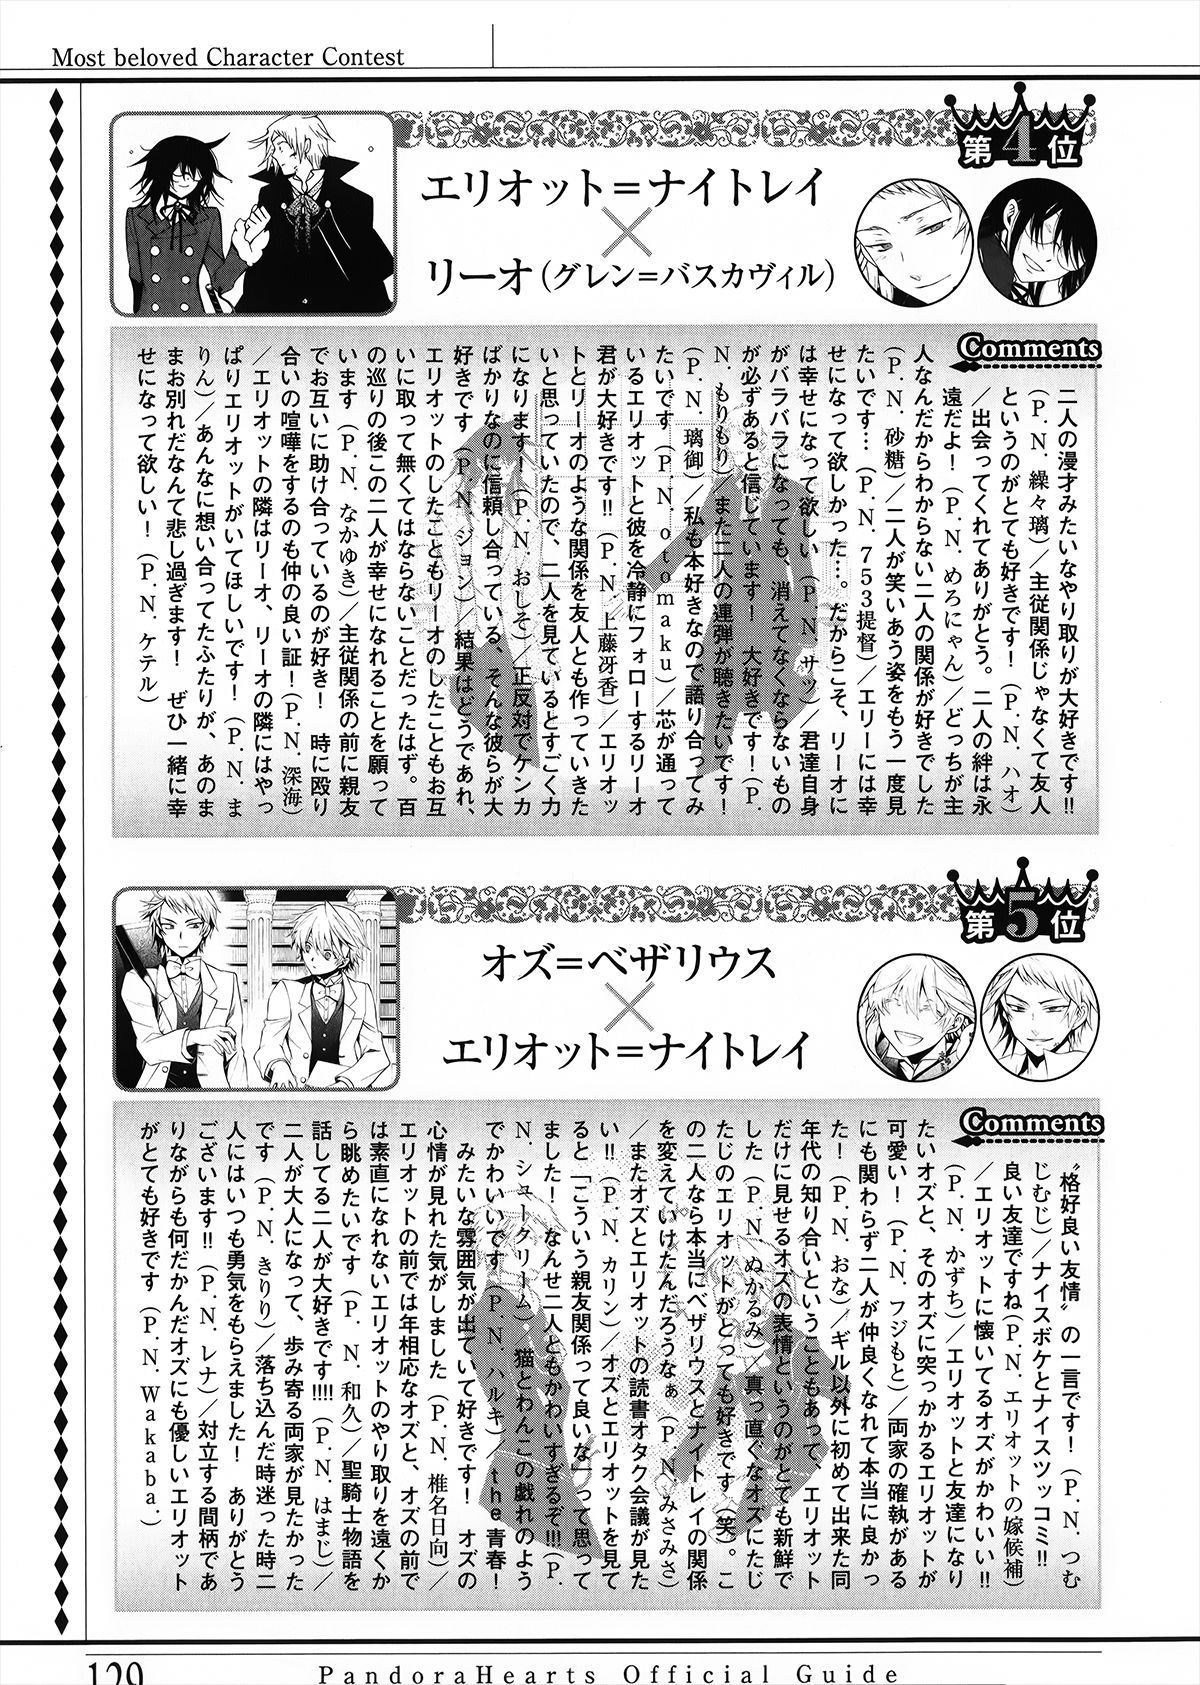 Pandora Hearts Guidebook 24+1: Last Dance パンドラハーツ オフィシャルガイド 24 + 1 ~Last Dance! 133